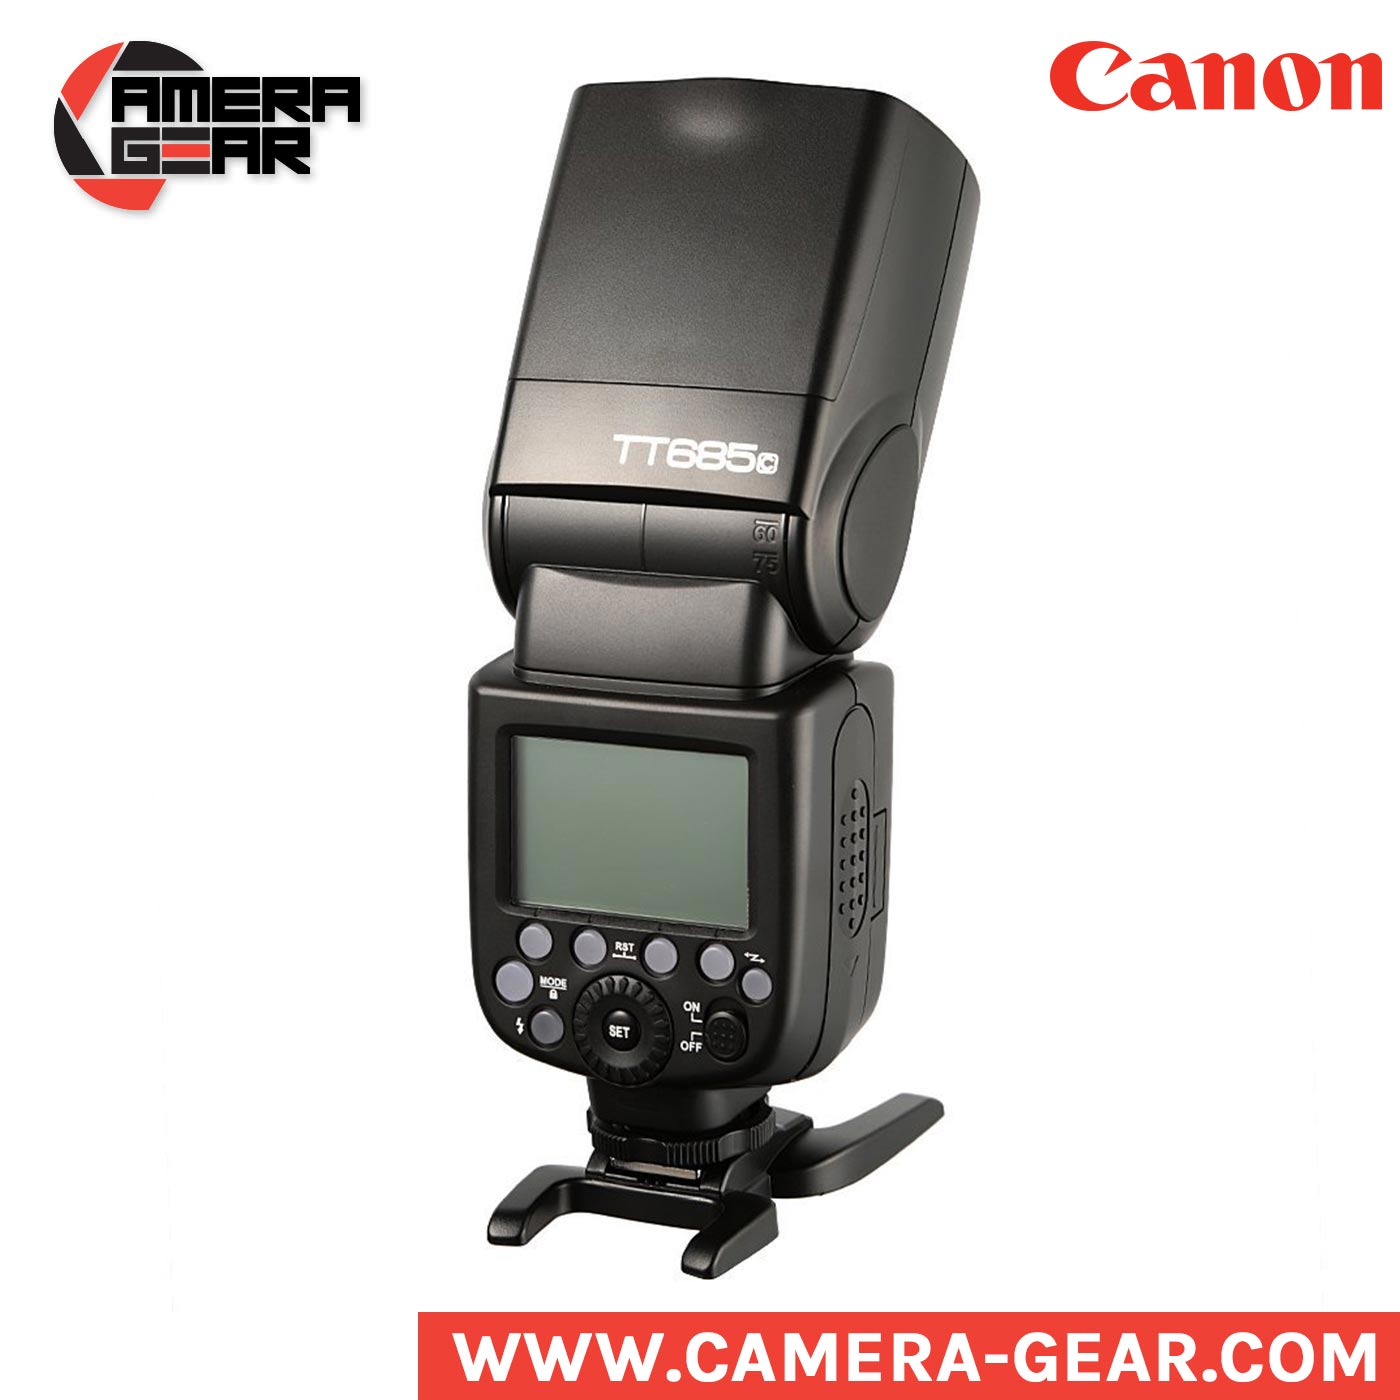 Godox TT685C - Flash speedlite for Canon cameras - Camera Gear